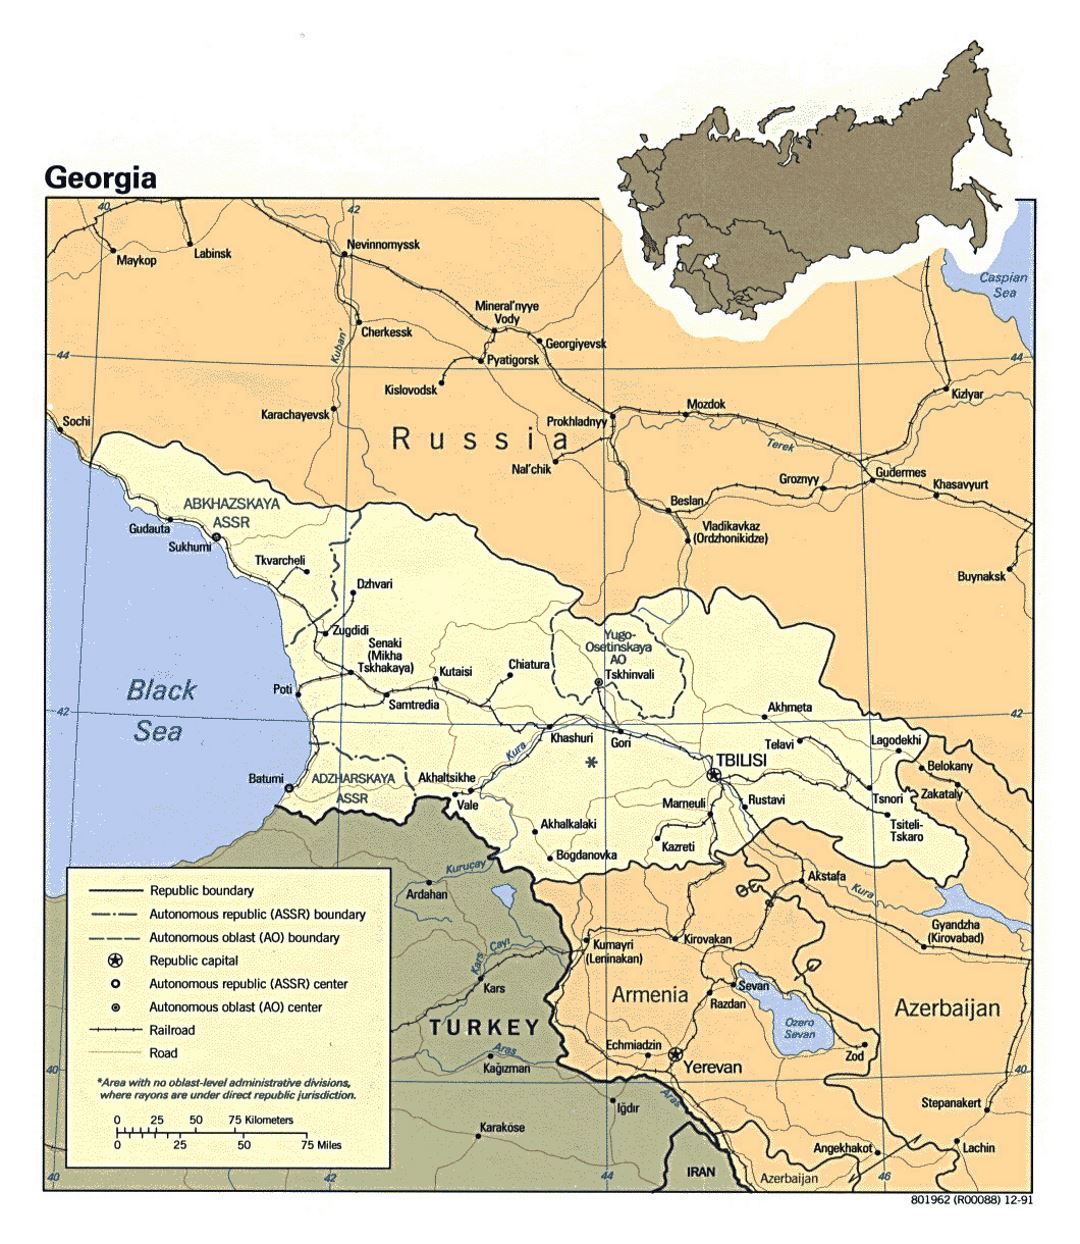 Detallado mapa político de Georgia con carreteras, ferrocarriles y principales ciudades - 1991